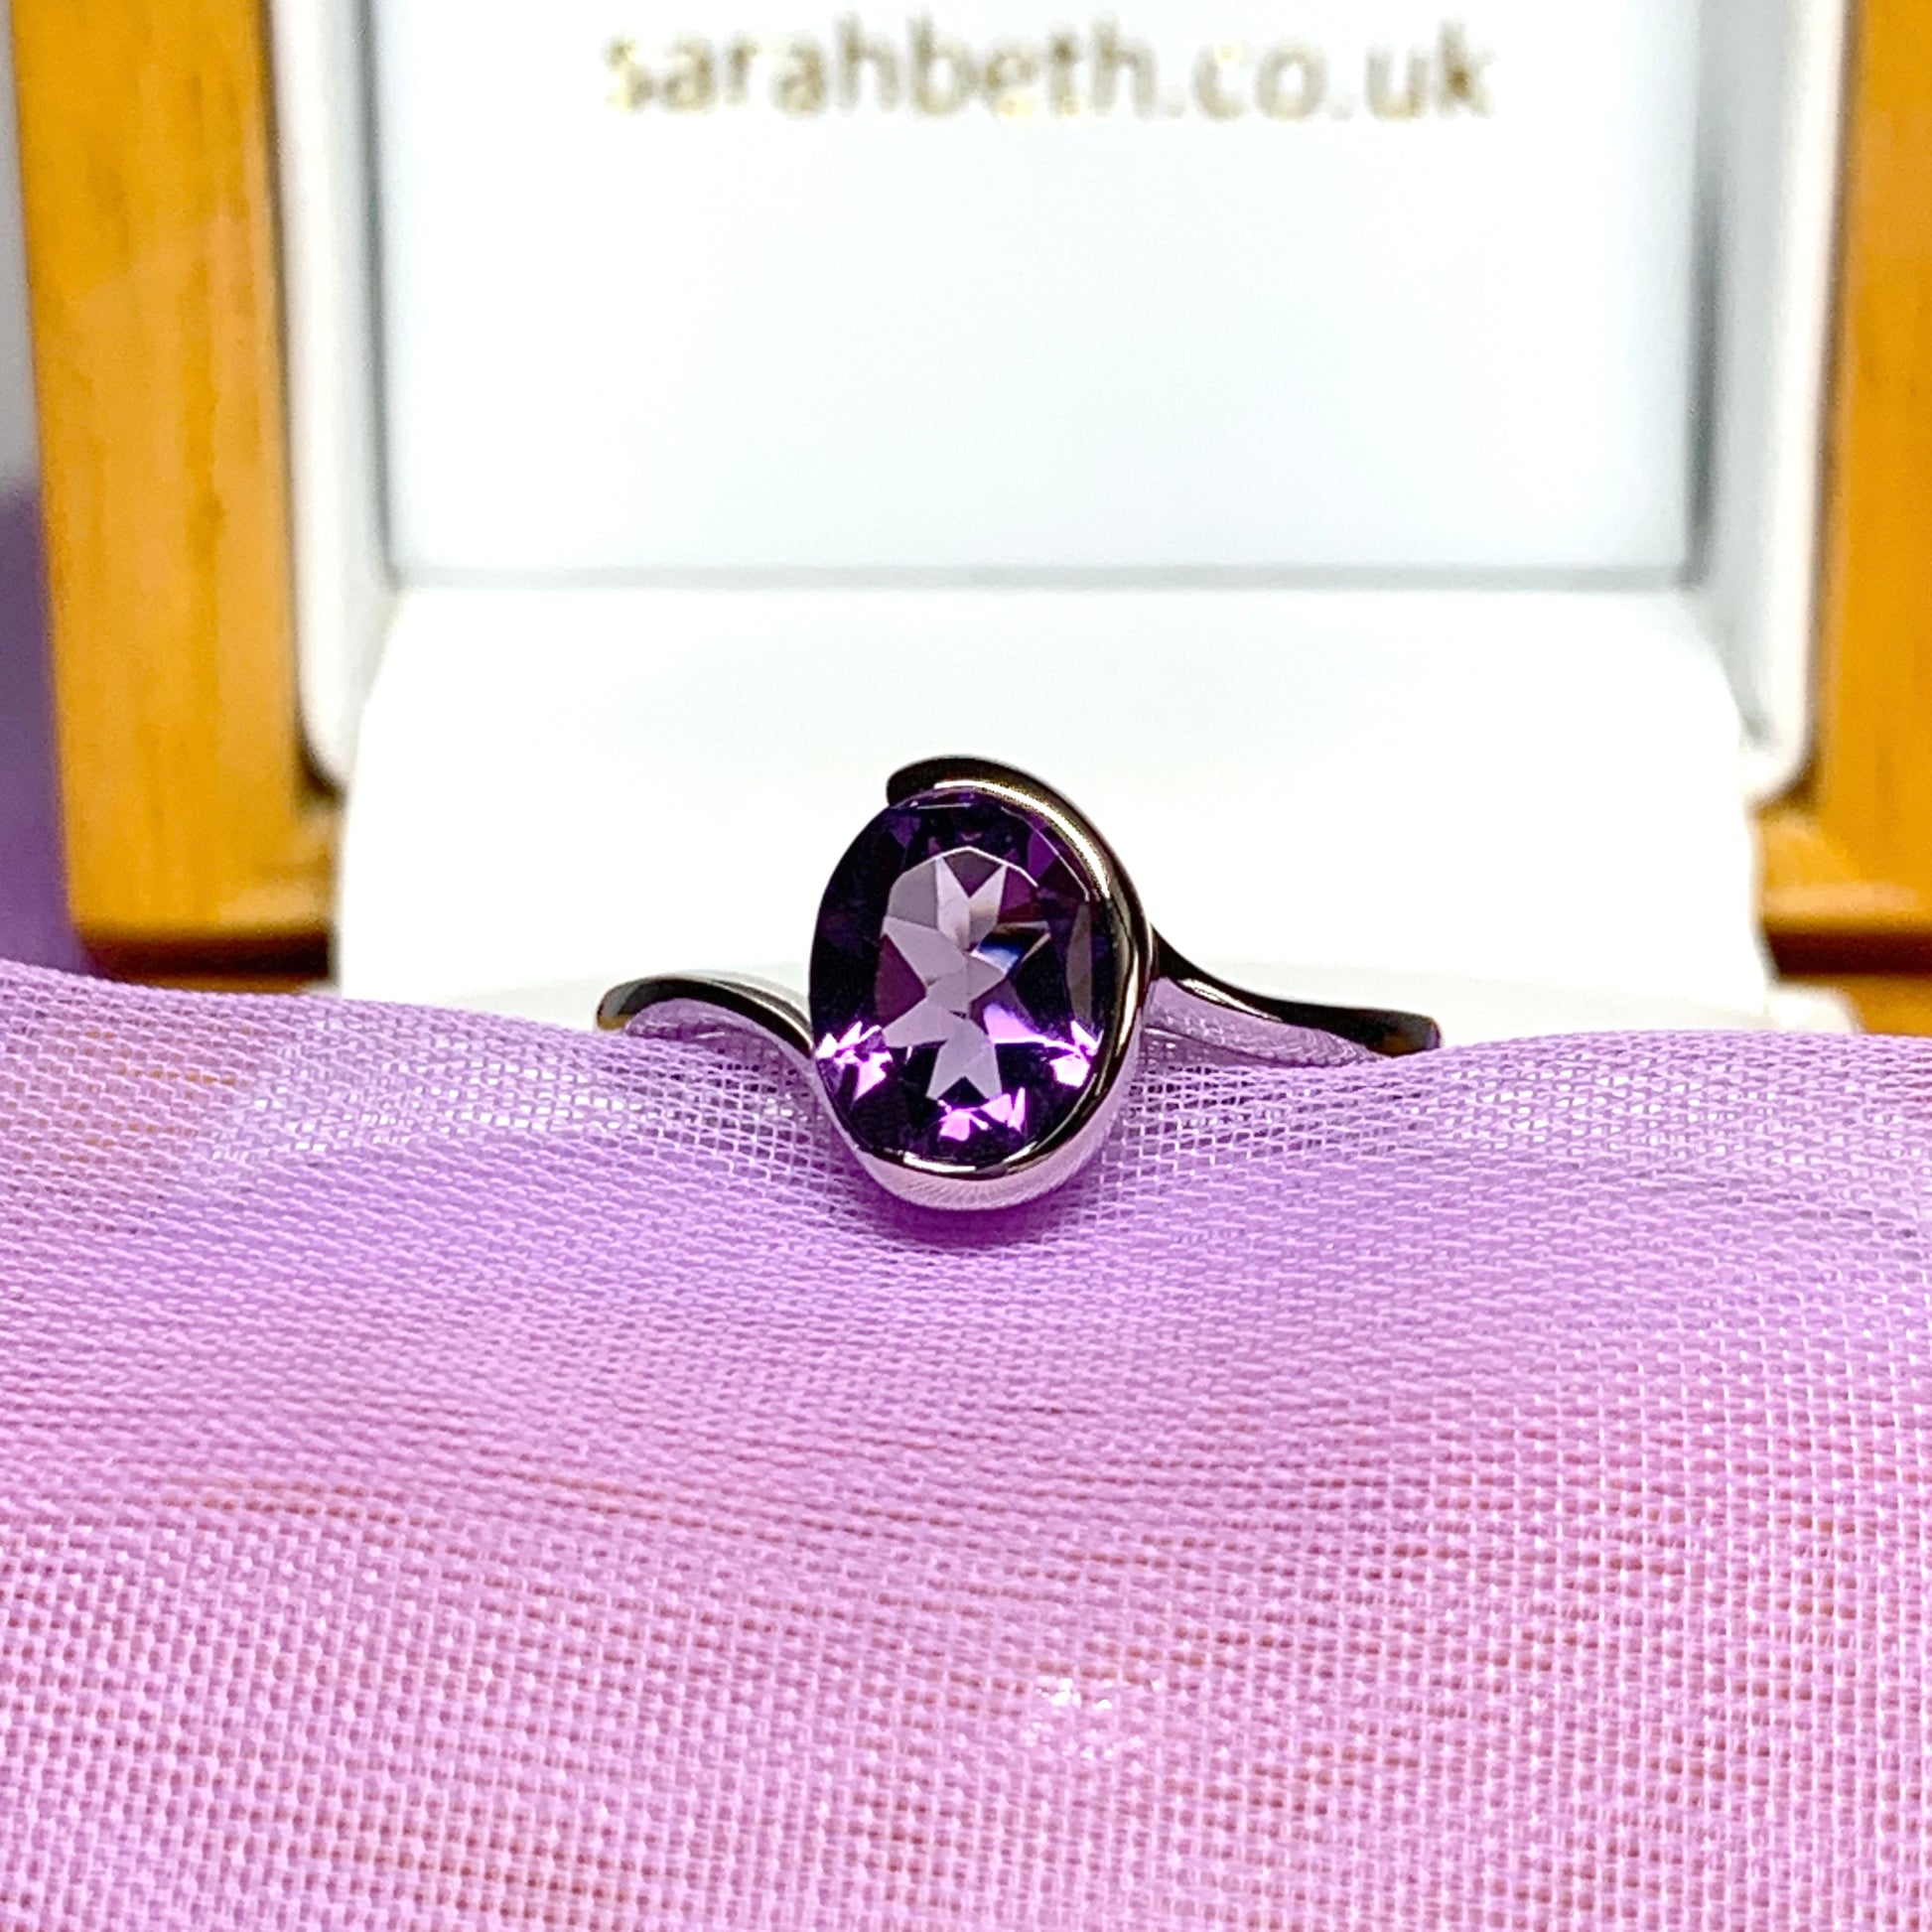 Real purple amethyst ring fancy oval swirl sterling silver